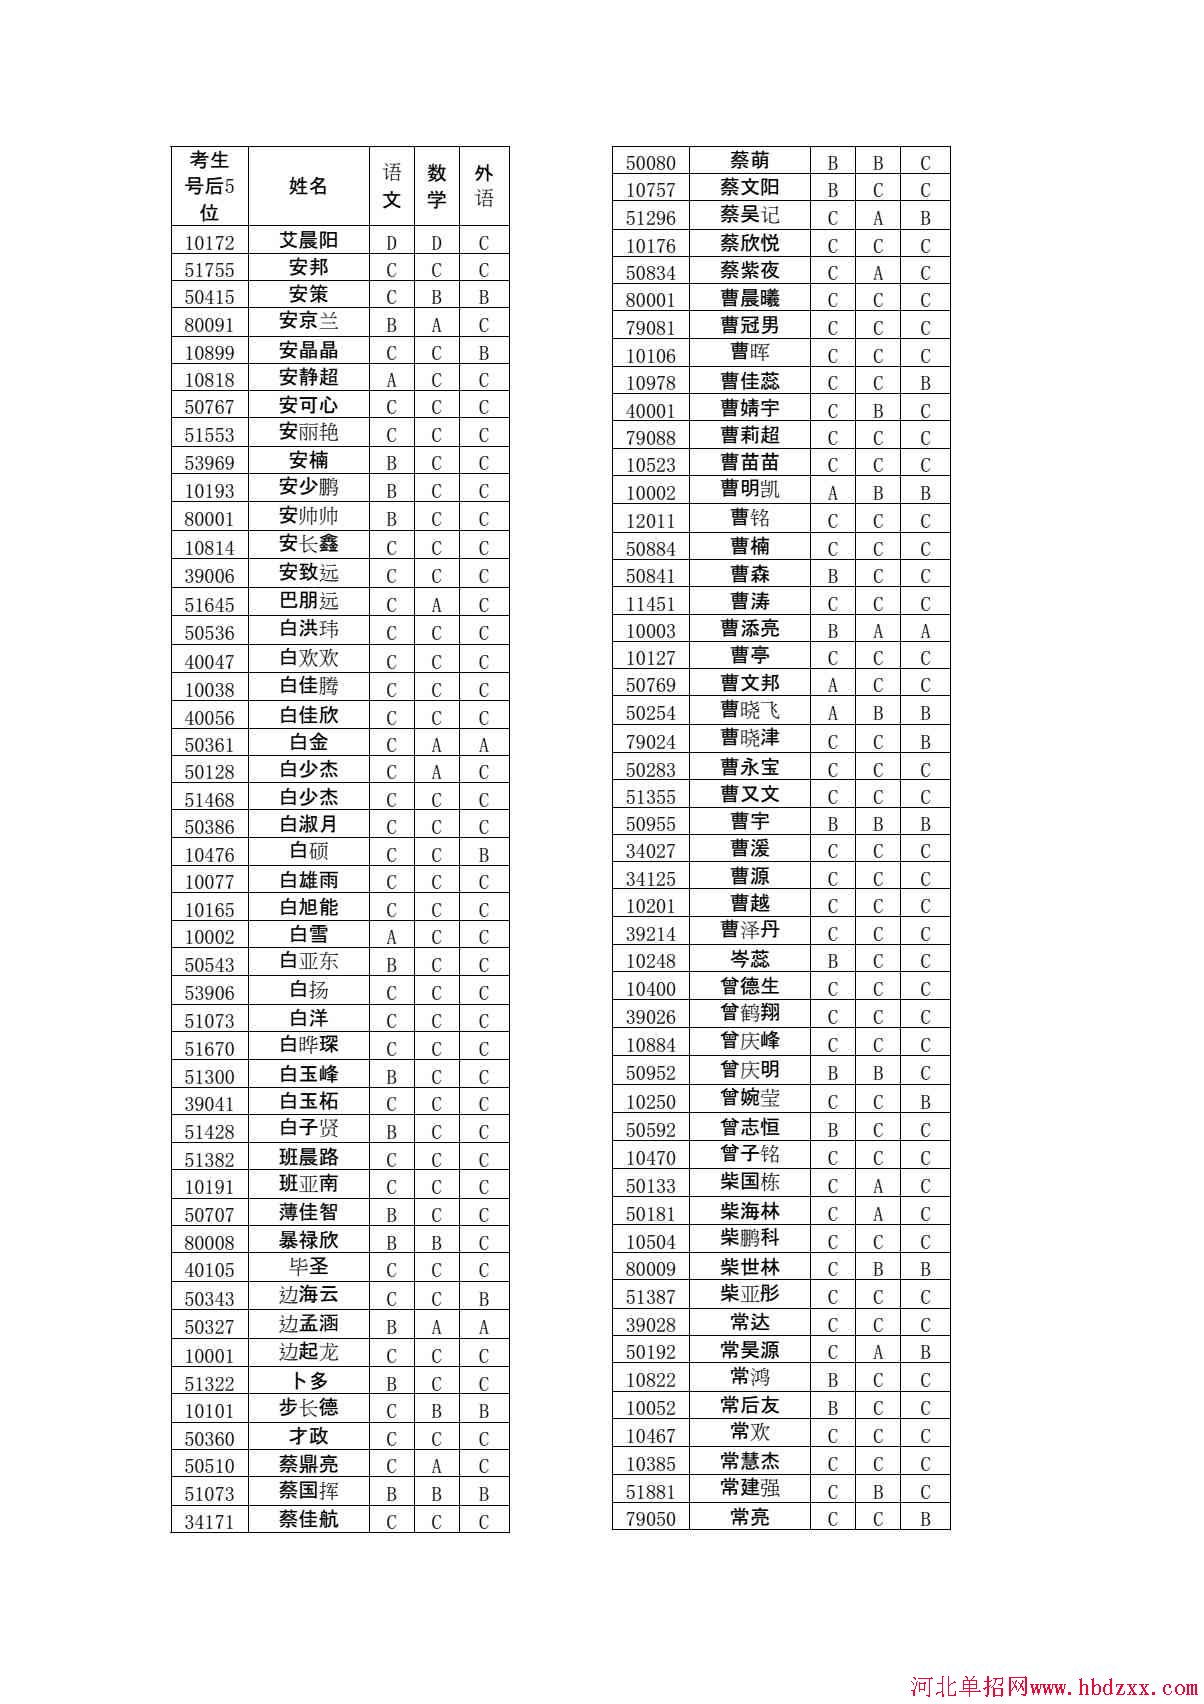 石家庄铁路职业技术学院2015年单独考试招生学问有免考资格考生名单 图4